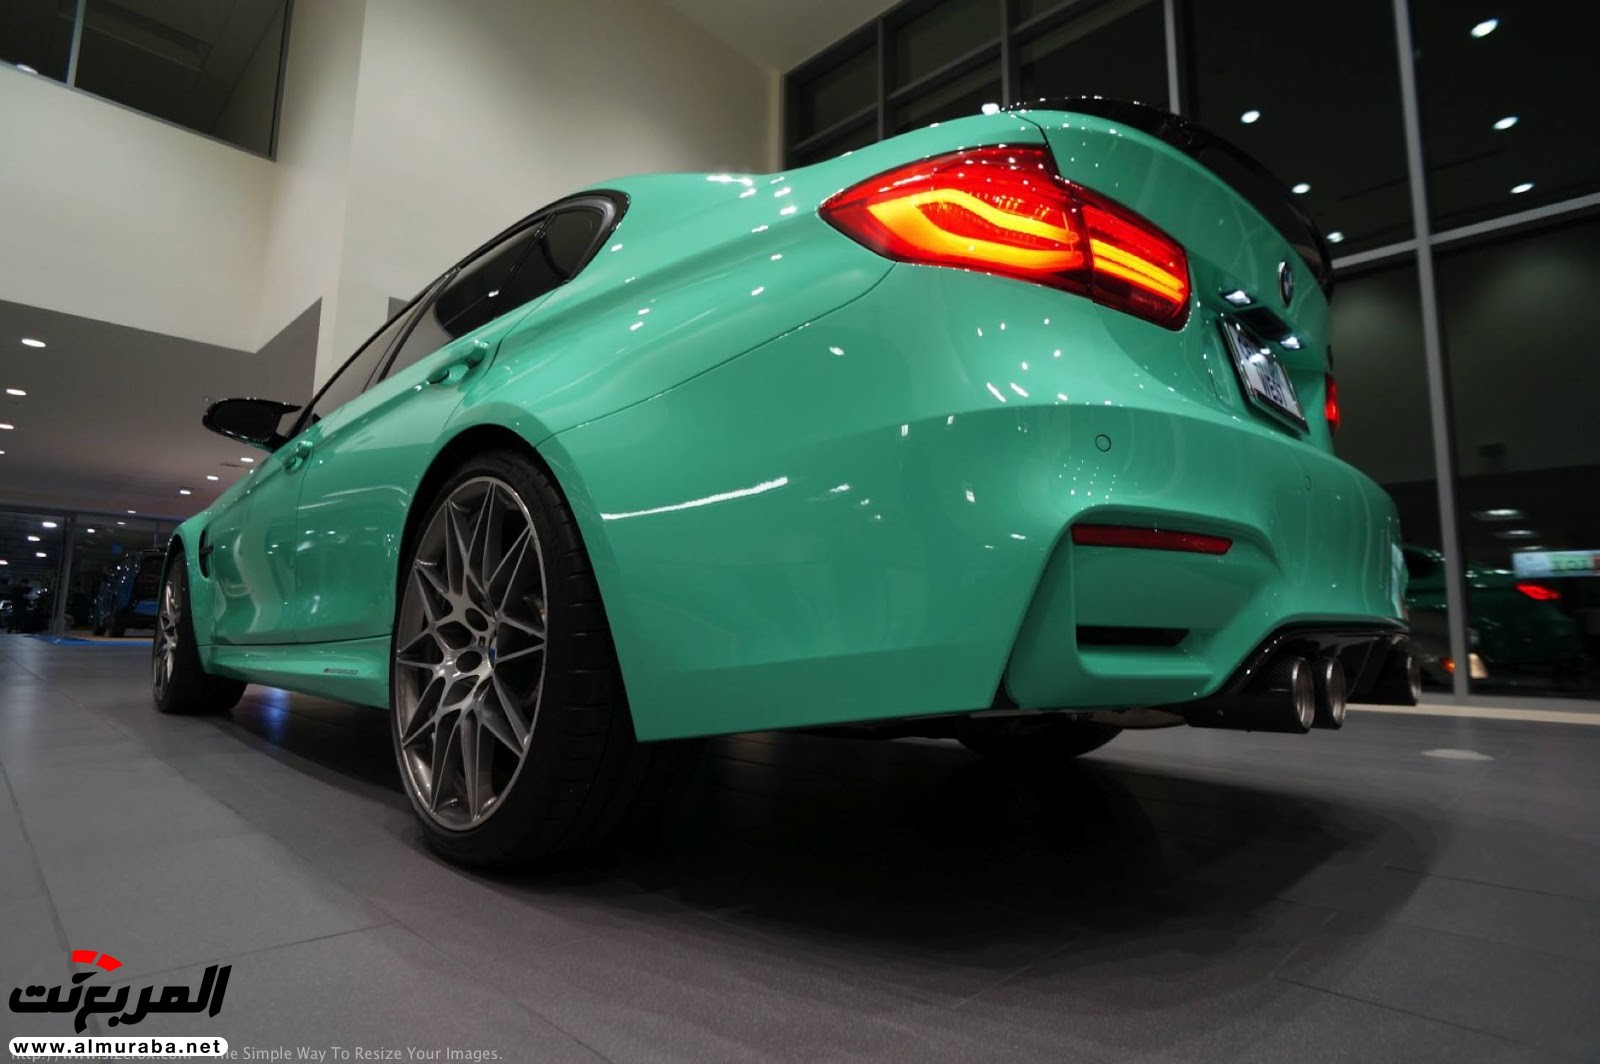 "بالصور" شاهد "بي إم دبليو" F80 M3 الخاصة بطلاء النعناع الأخضر BMW 98